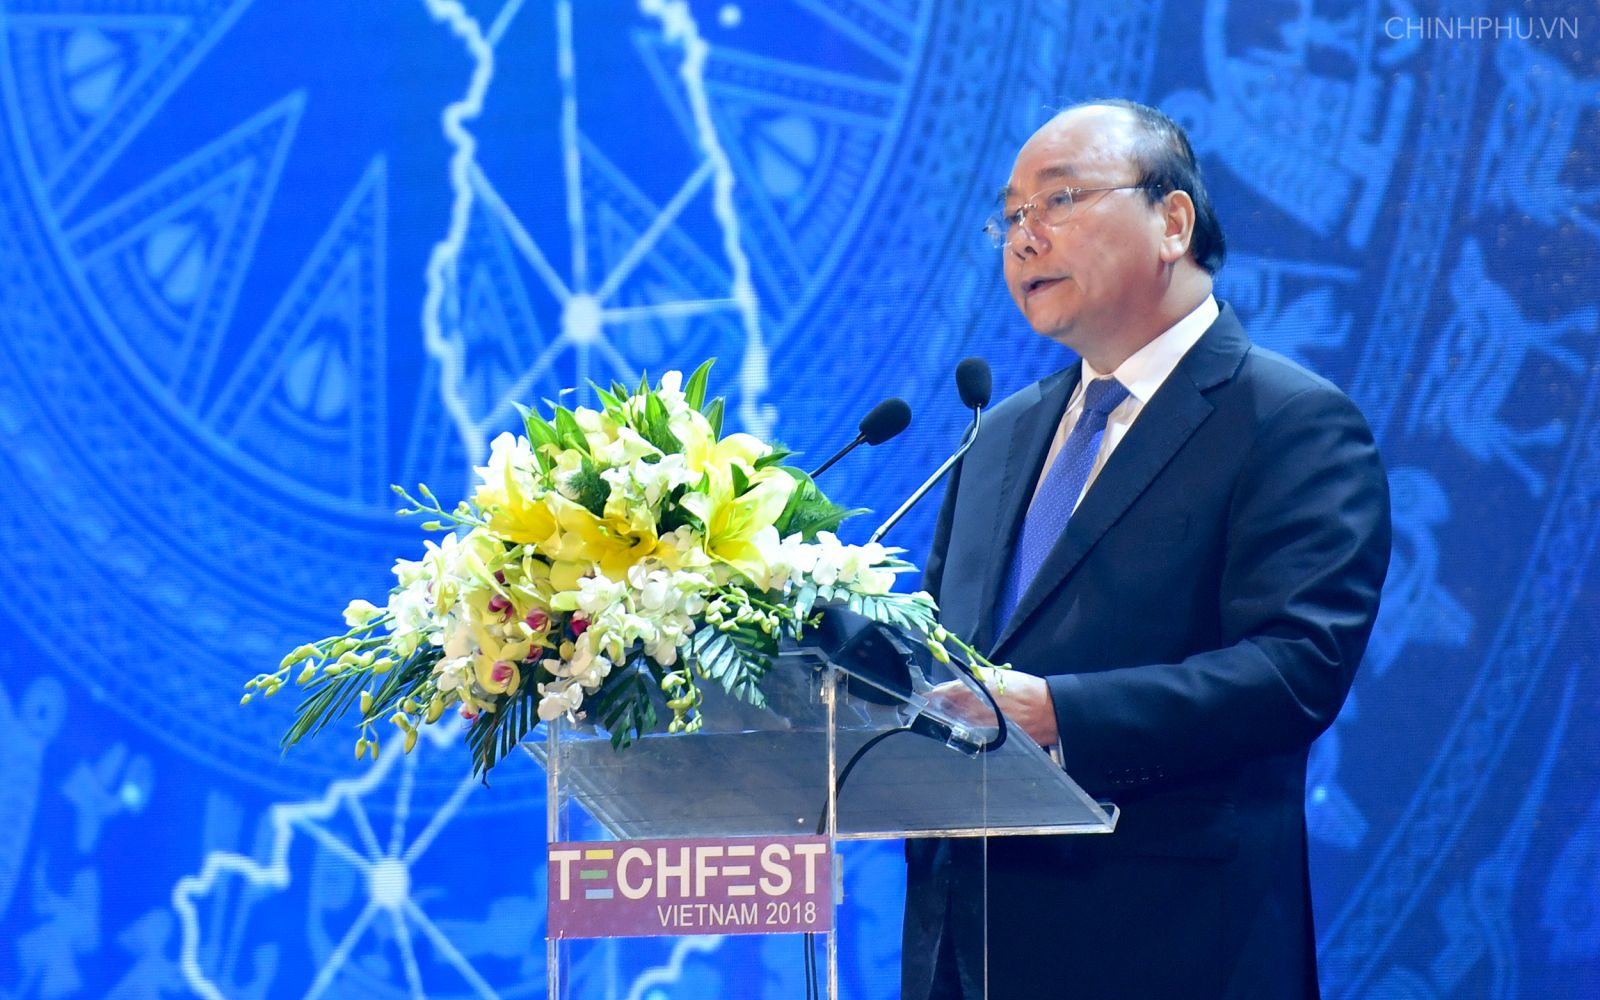 Thủ tướng phát biểu tại Lễ khai mạc Ngày hội khởi nghiệp đổi mới sáng tạo quốc gia. Ảnh VGP/Quang Hiếu